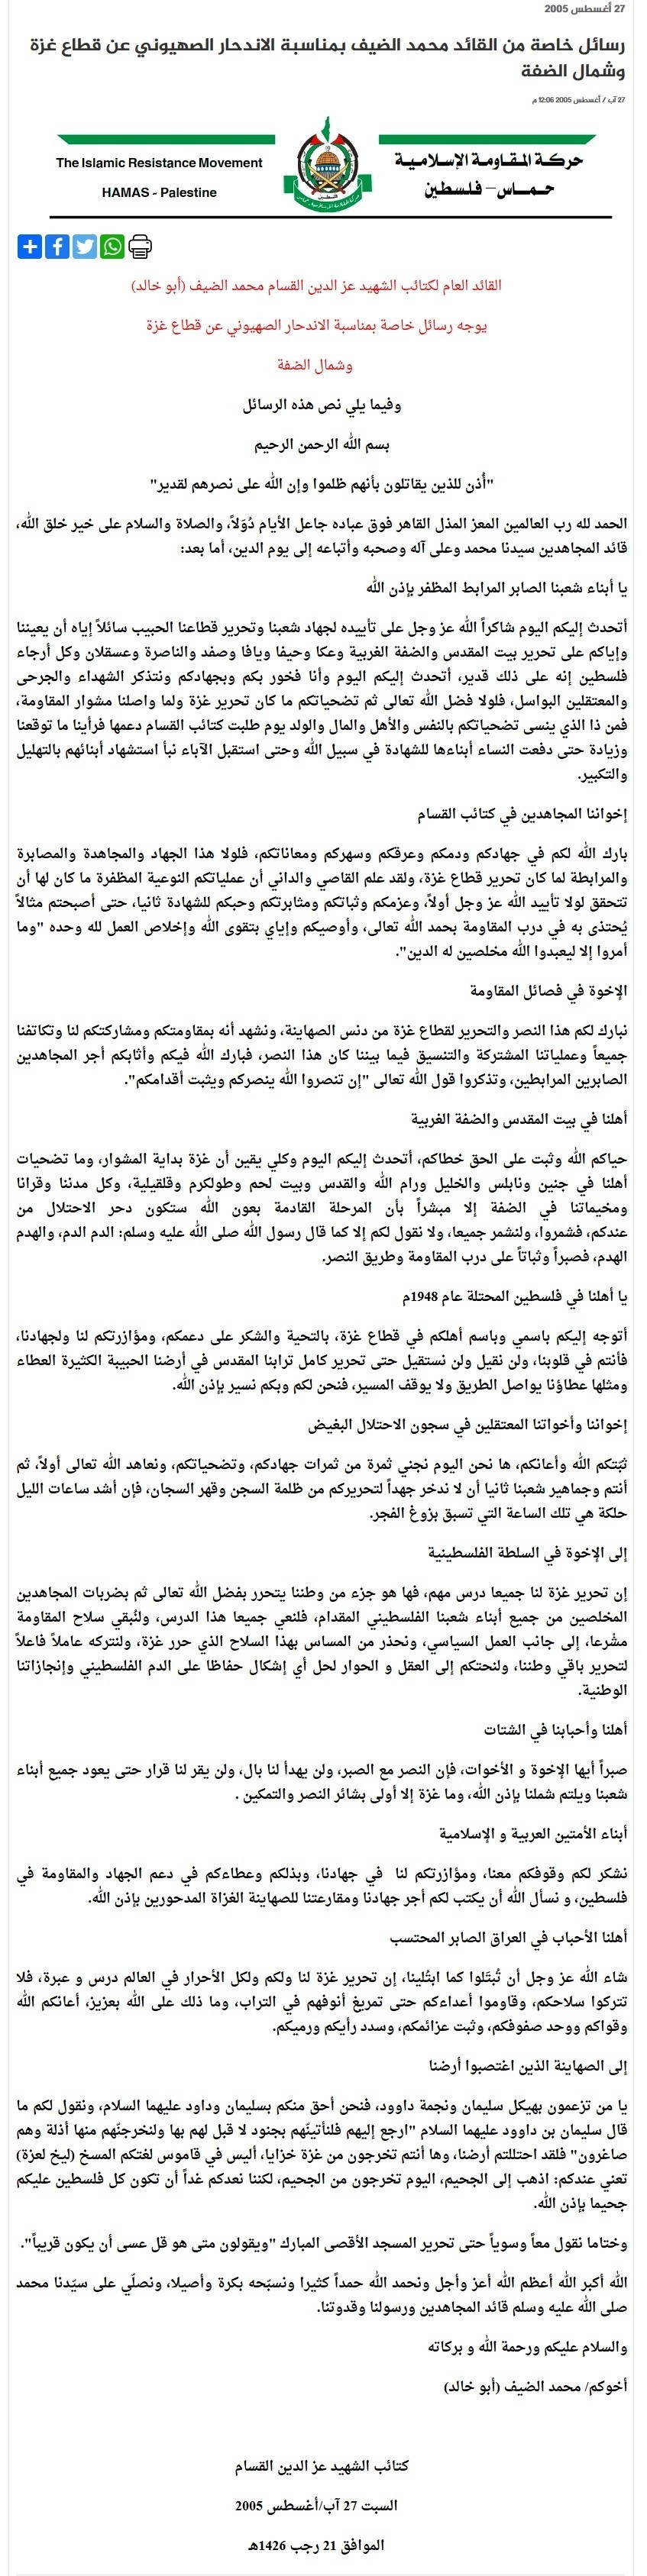 القسام تكشف عن رسالة "الضيف" قبيل انسحاب الاحتلال من قطاع غزة عام 2005!